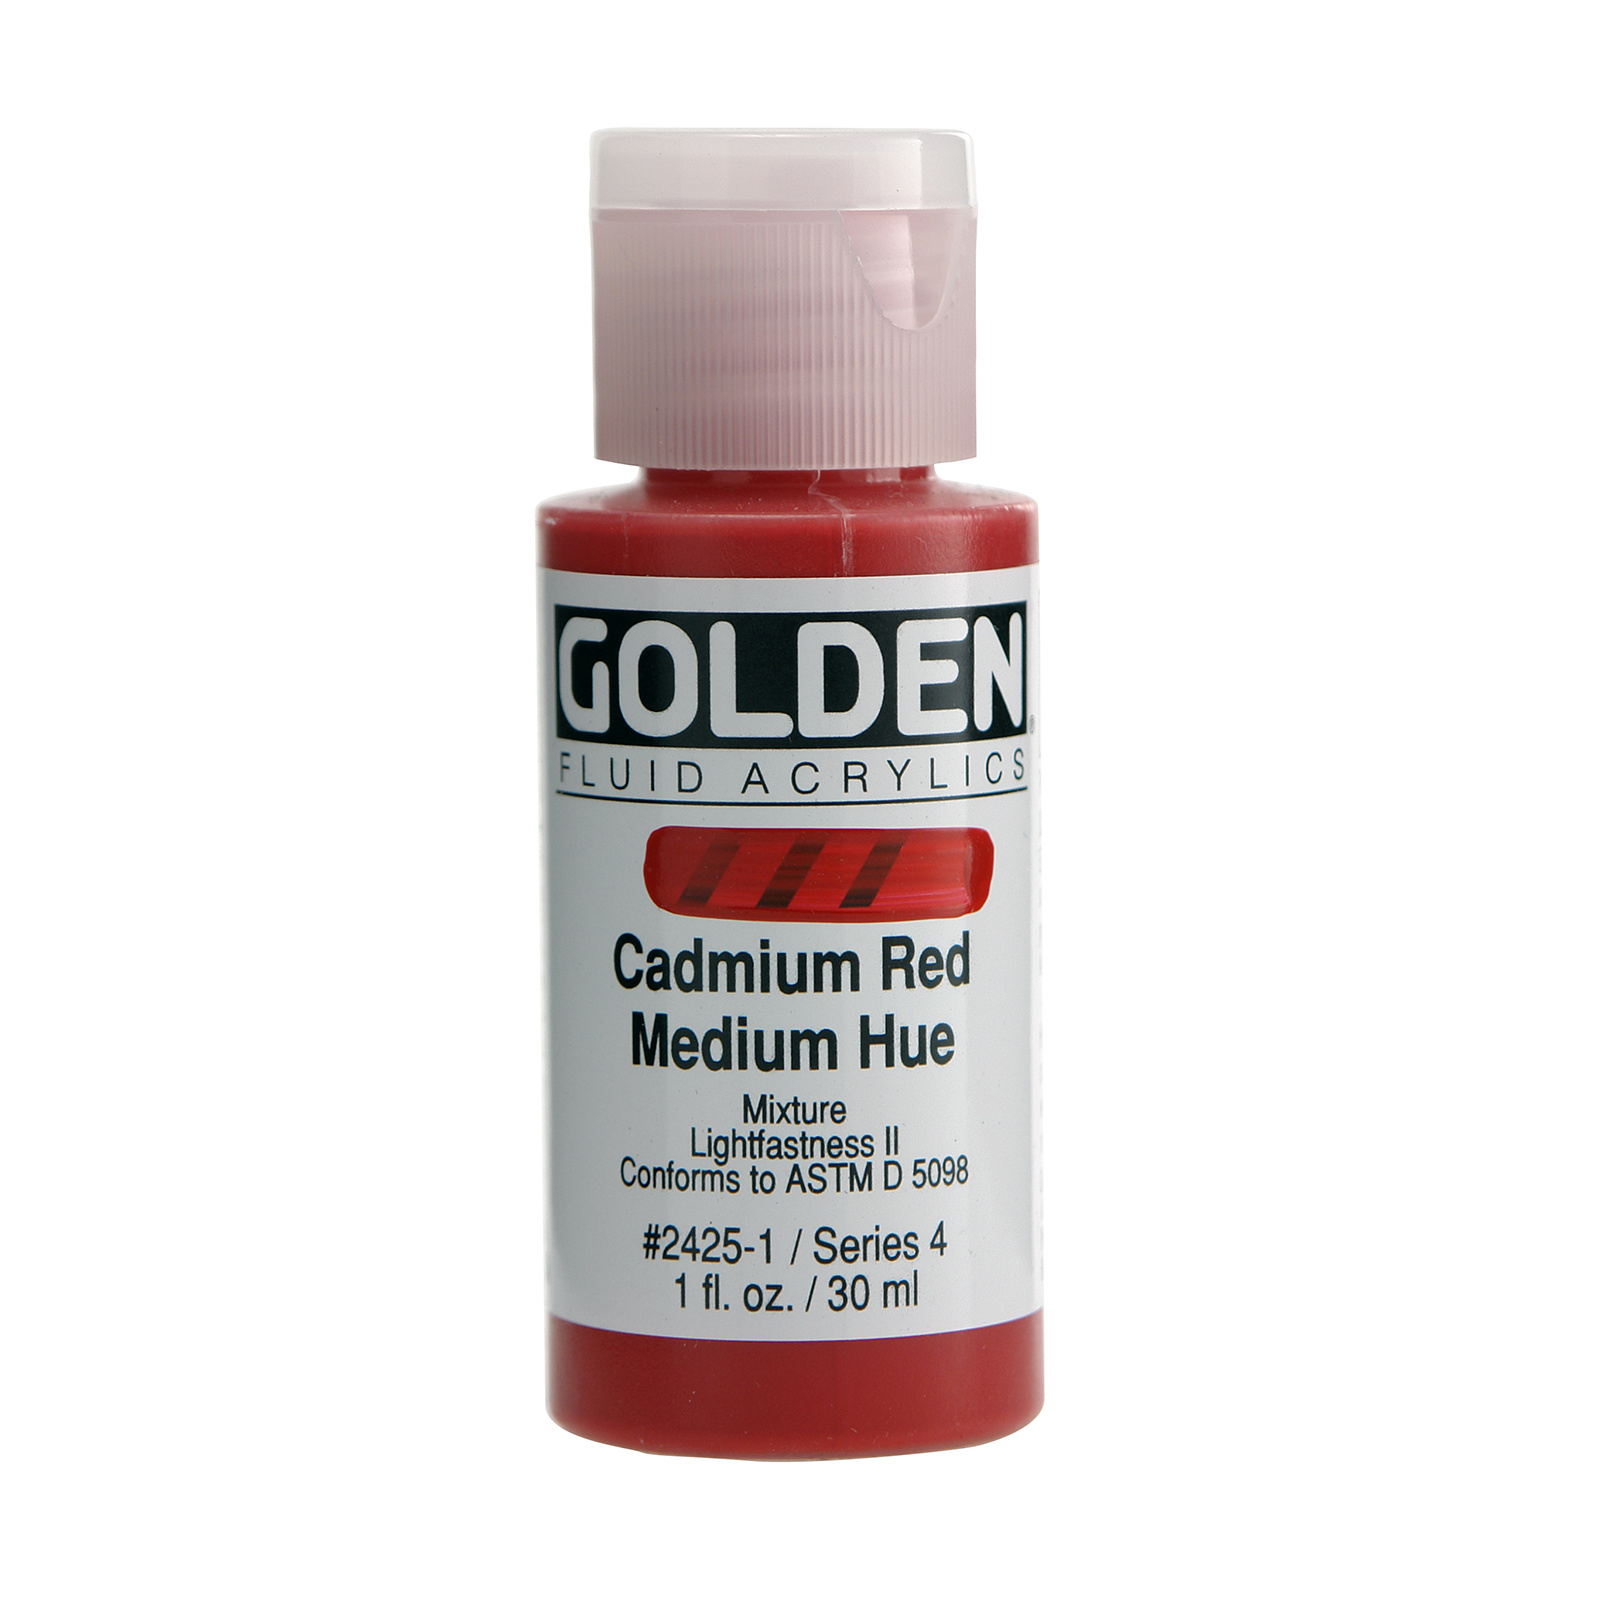 Golden Fluid Acrylics, 1 oz. Bottles, Cadmium Red Medium Hue